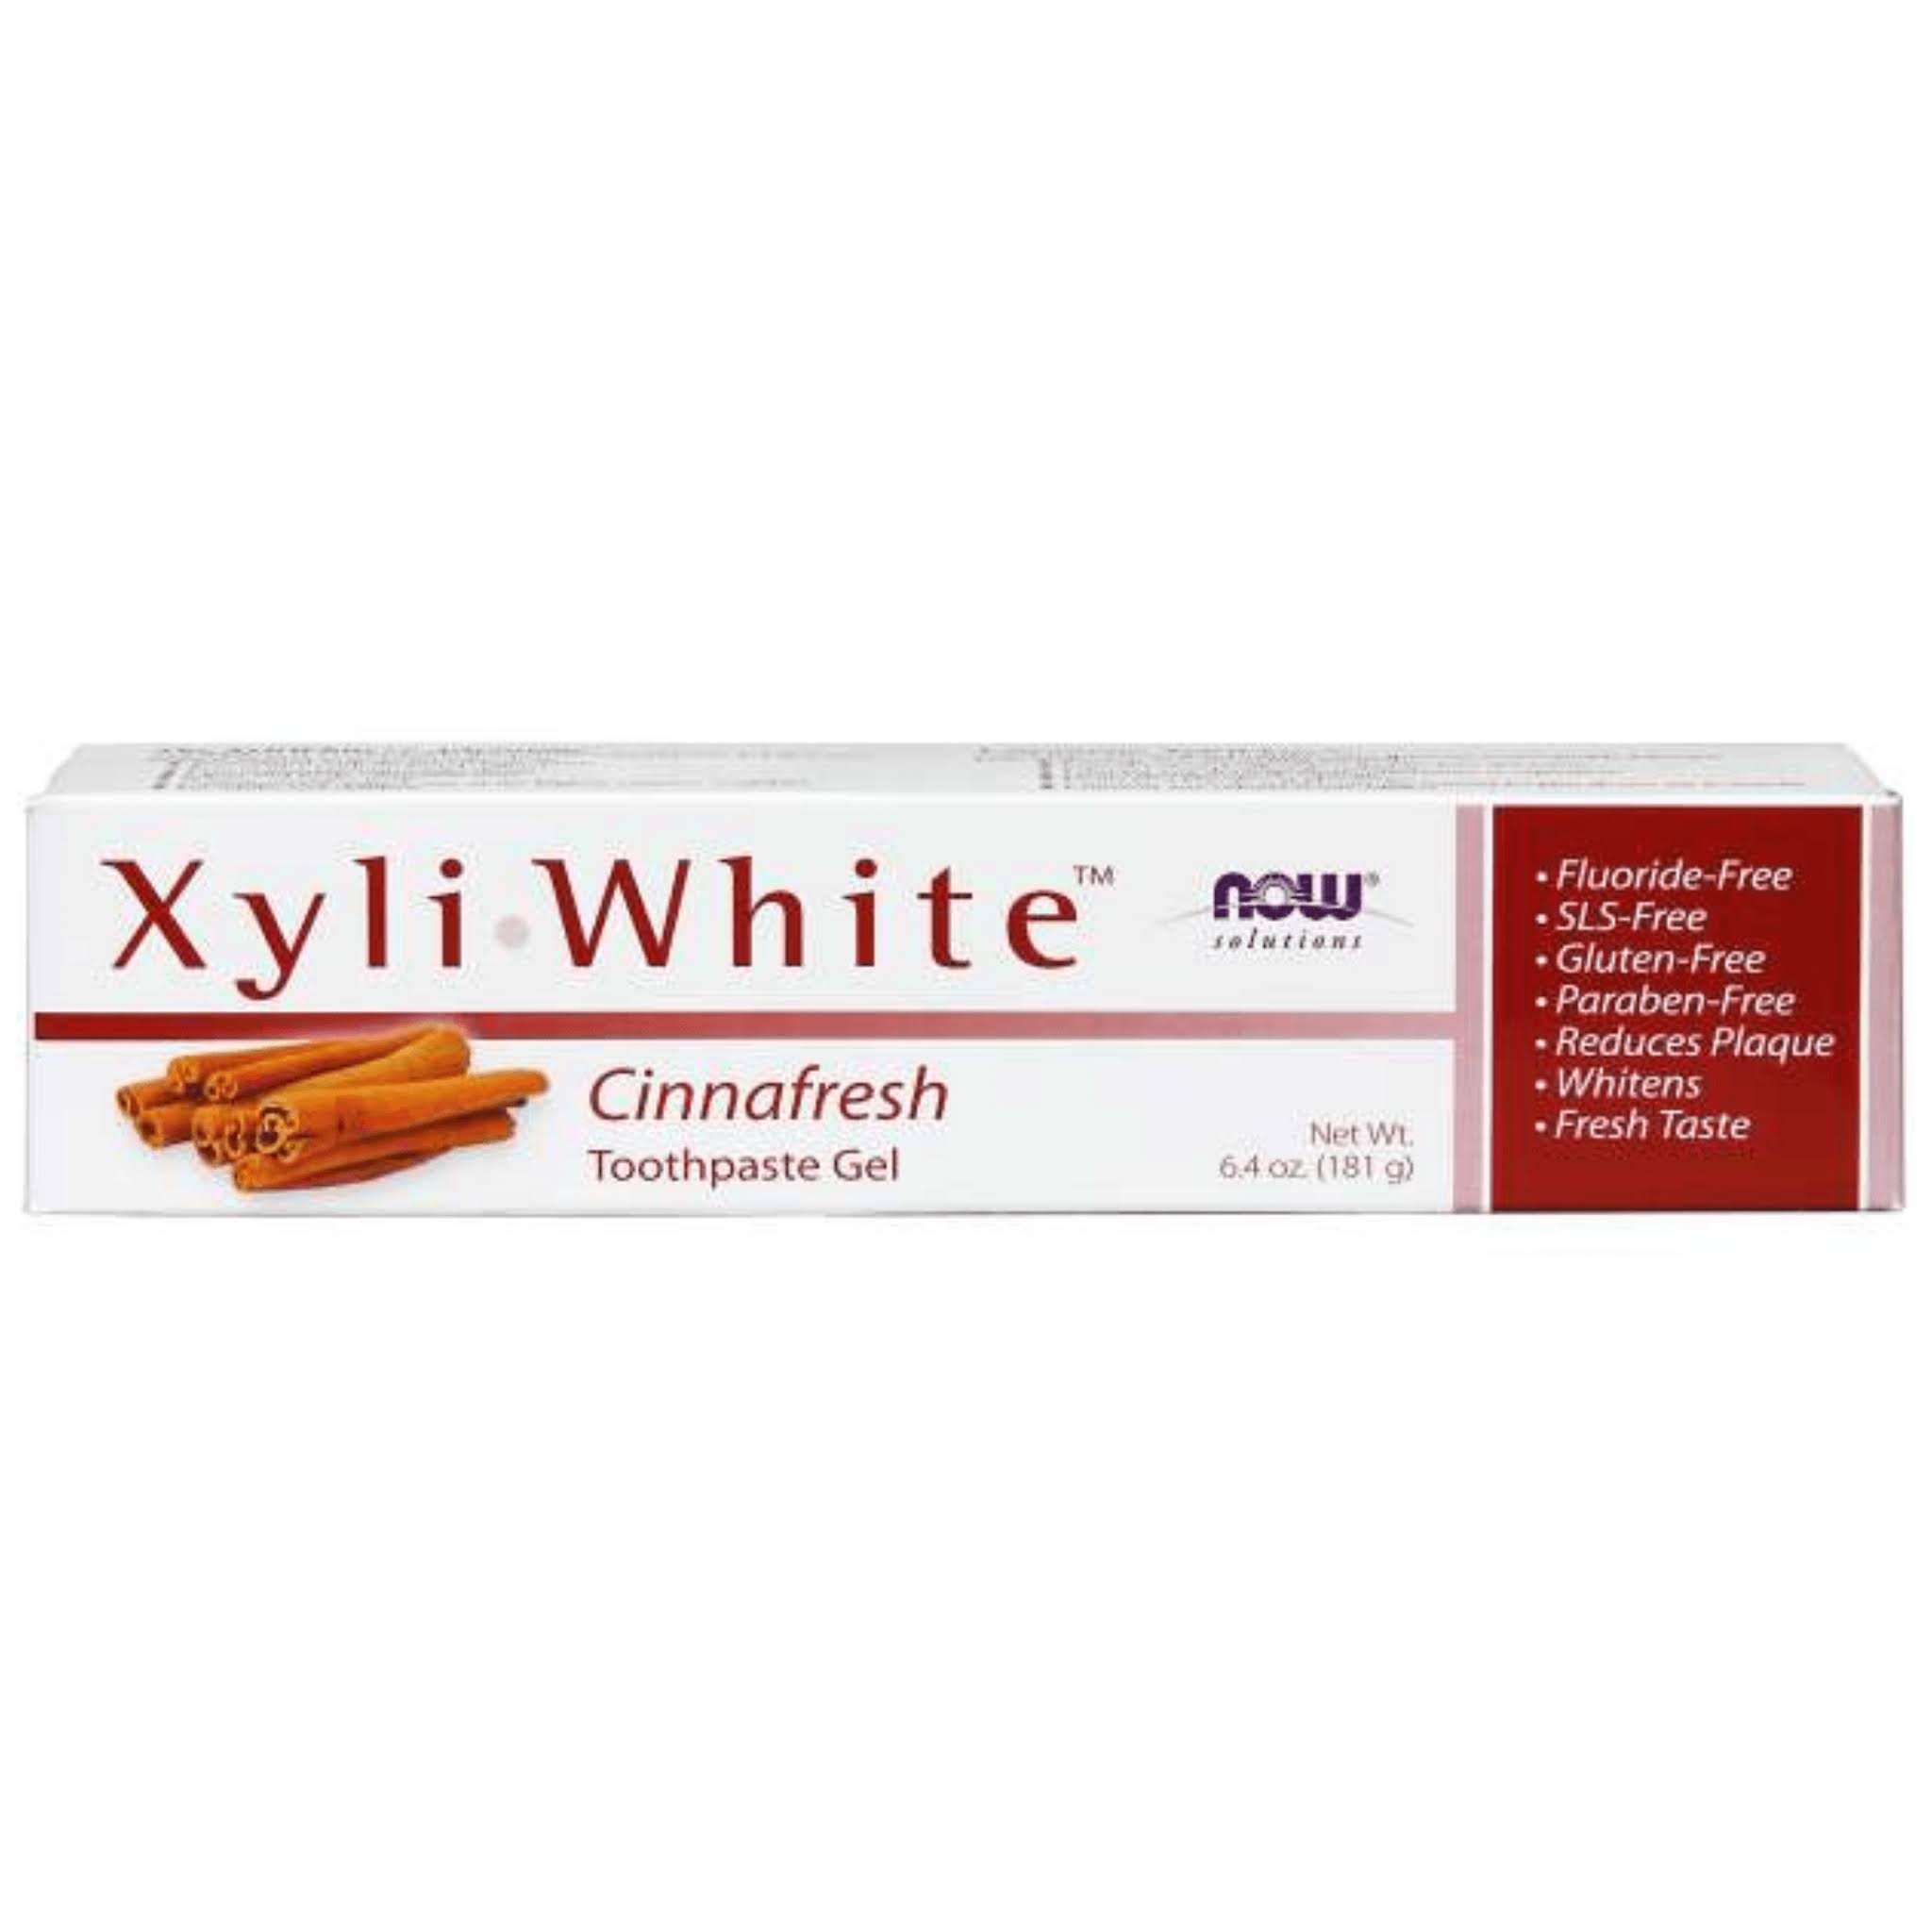 Now Foods Xyliwhite Toothpaste Gel - Cinnafresh, 6.4oz